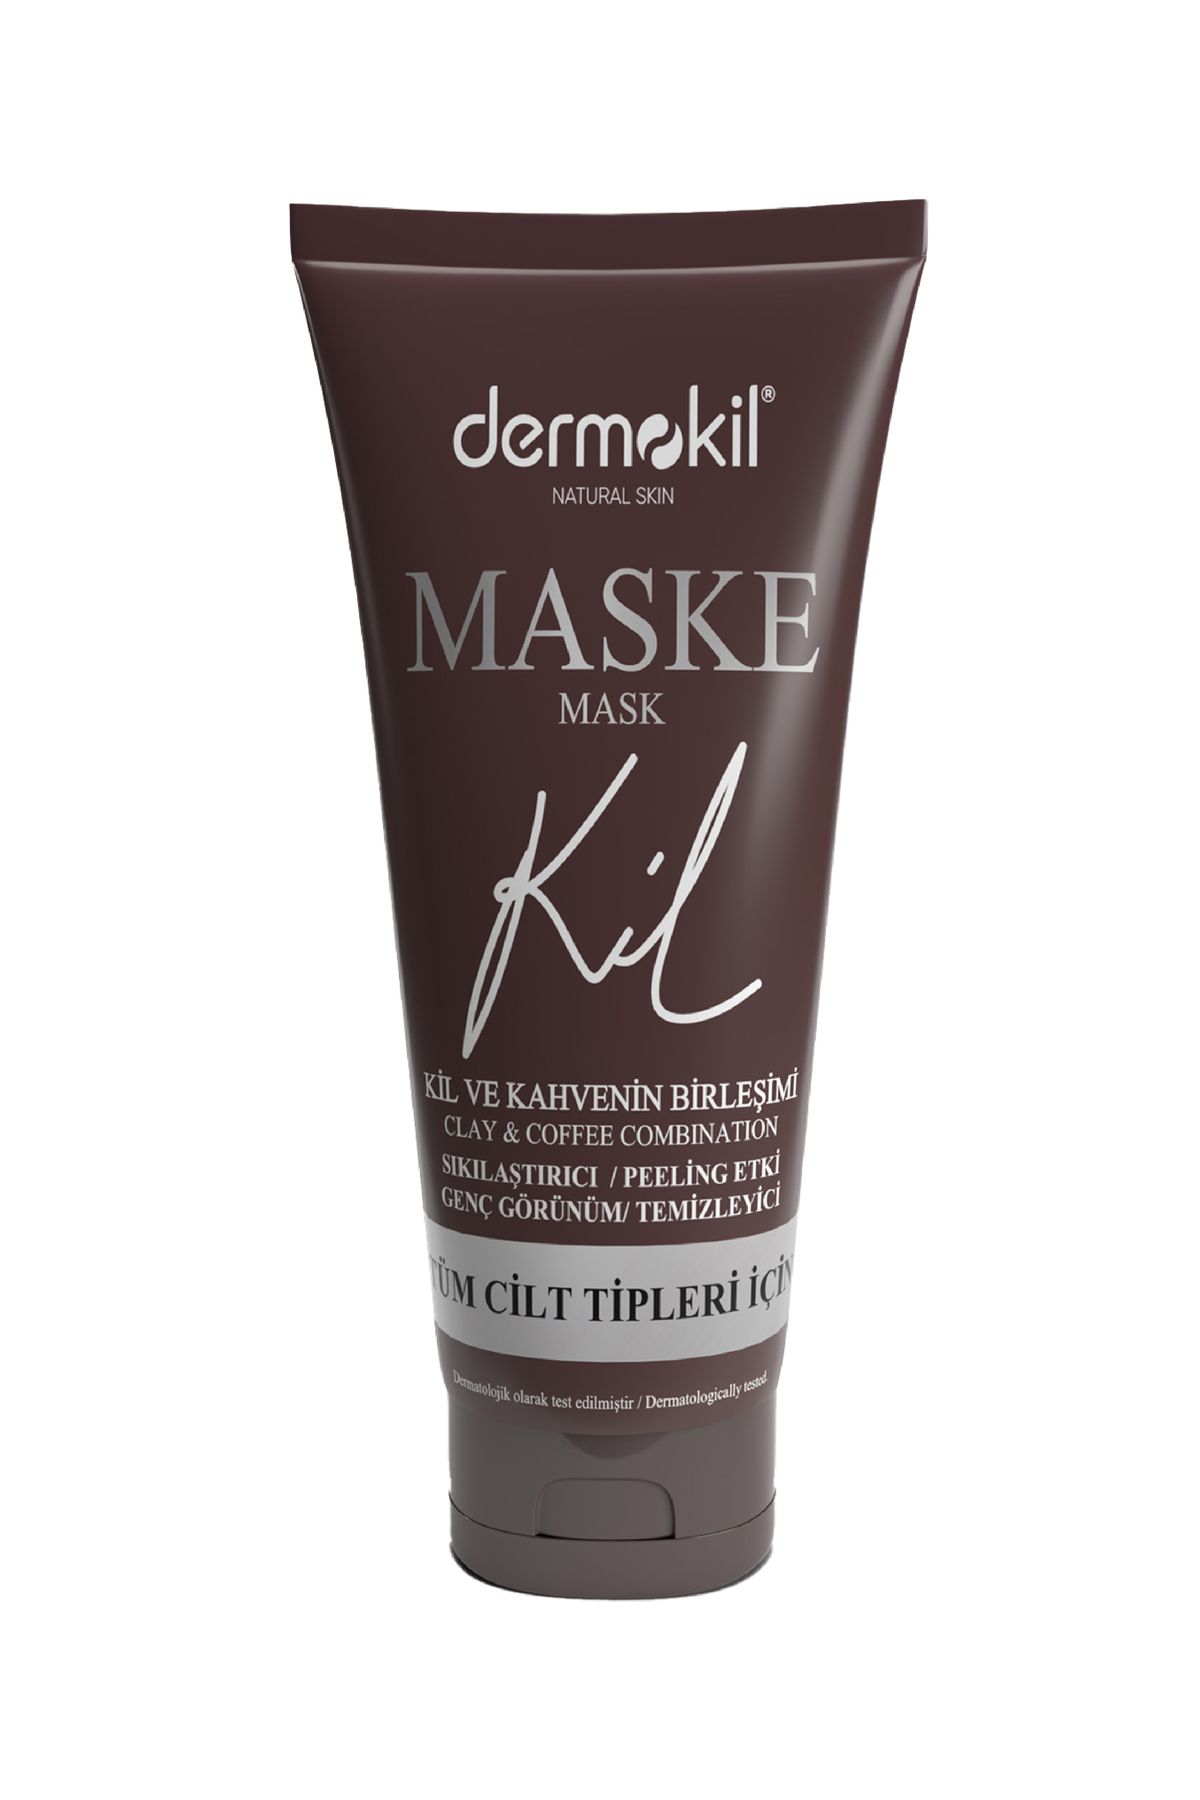 Dermokil Natural Skin Sıkılaştırıcı Genç Görünüm Için Kil Ve Kahve Içerikli Maske 75 Ml ( Kahve &kil